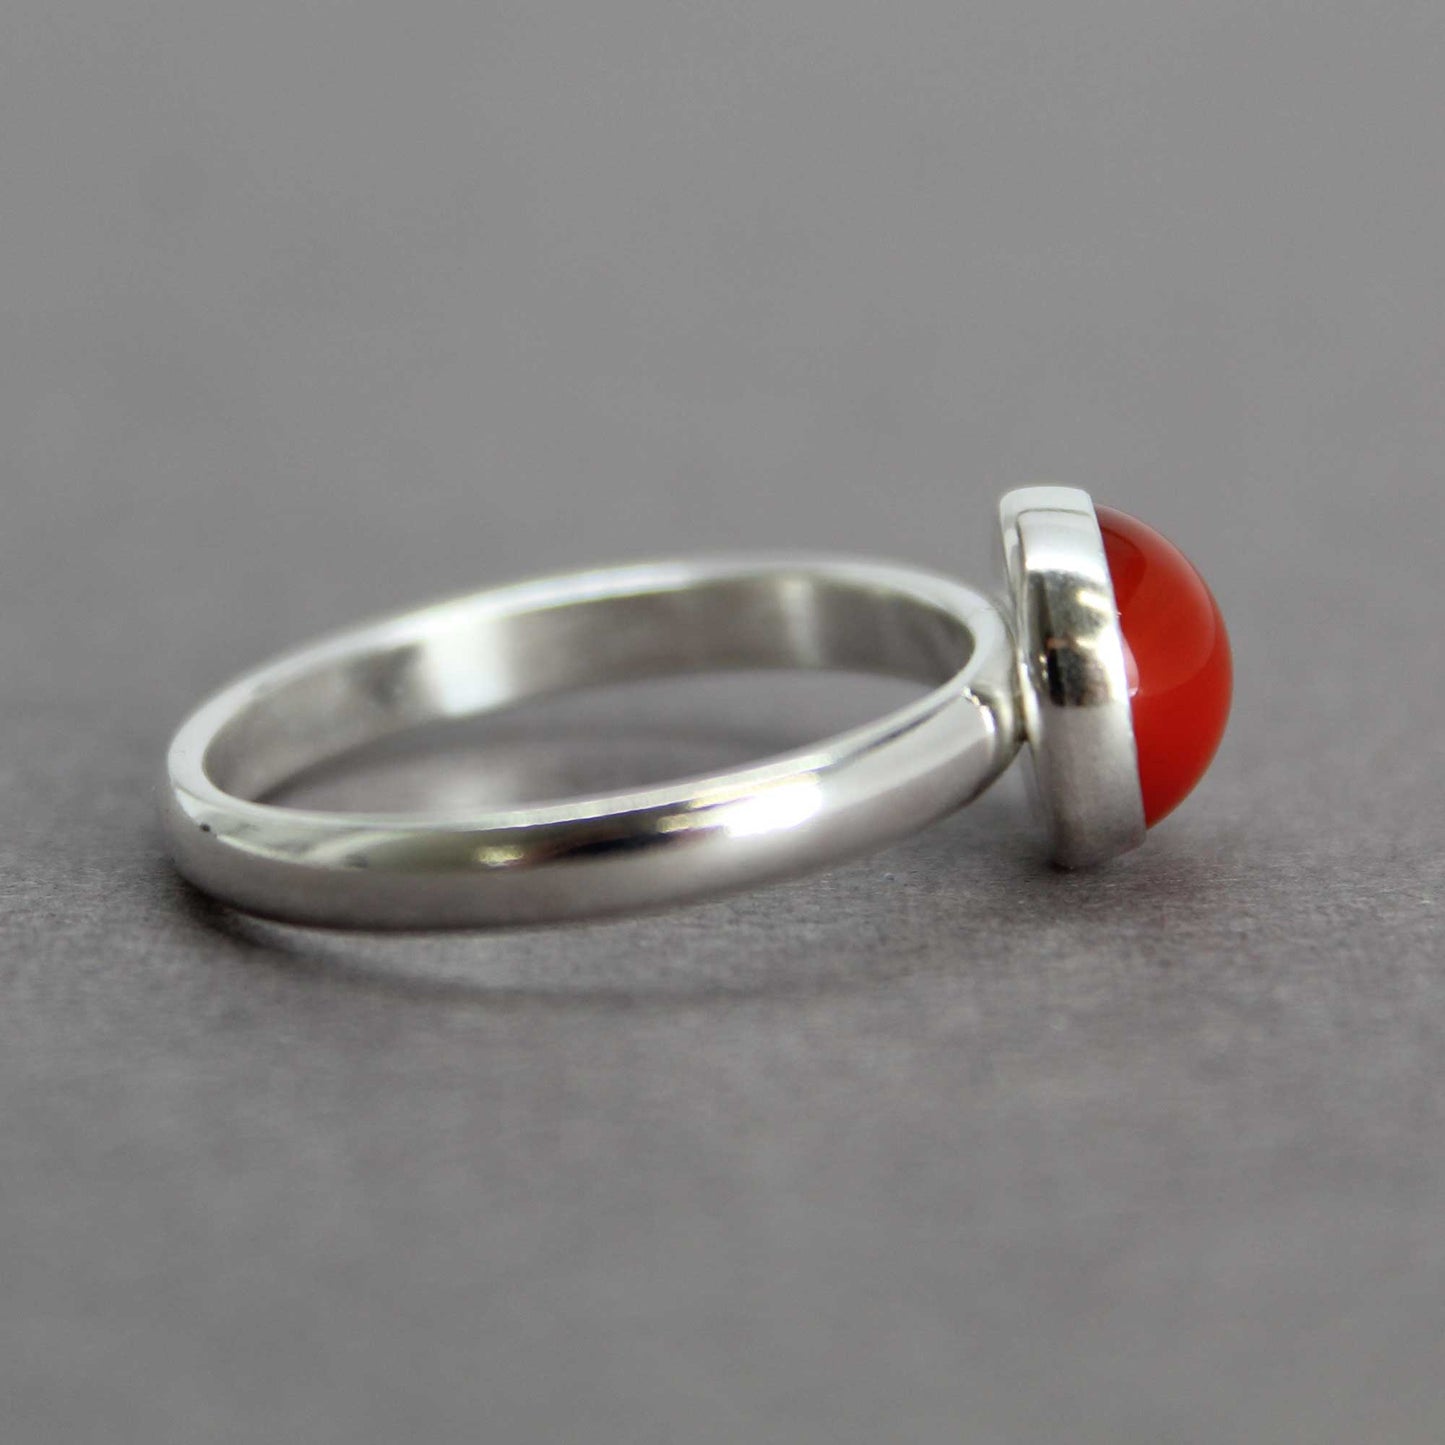 Red Carnelian Ring Bezel Set in 925 Sterling Silver, Size 7 US